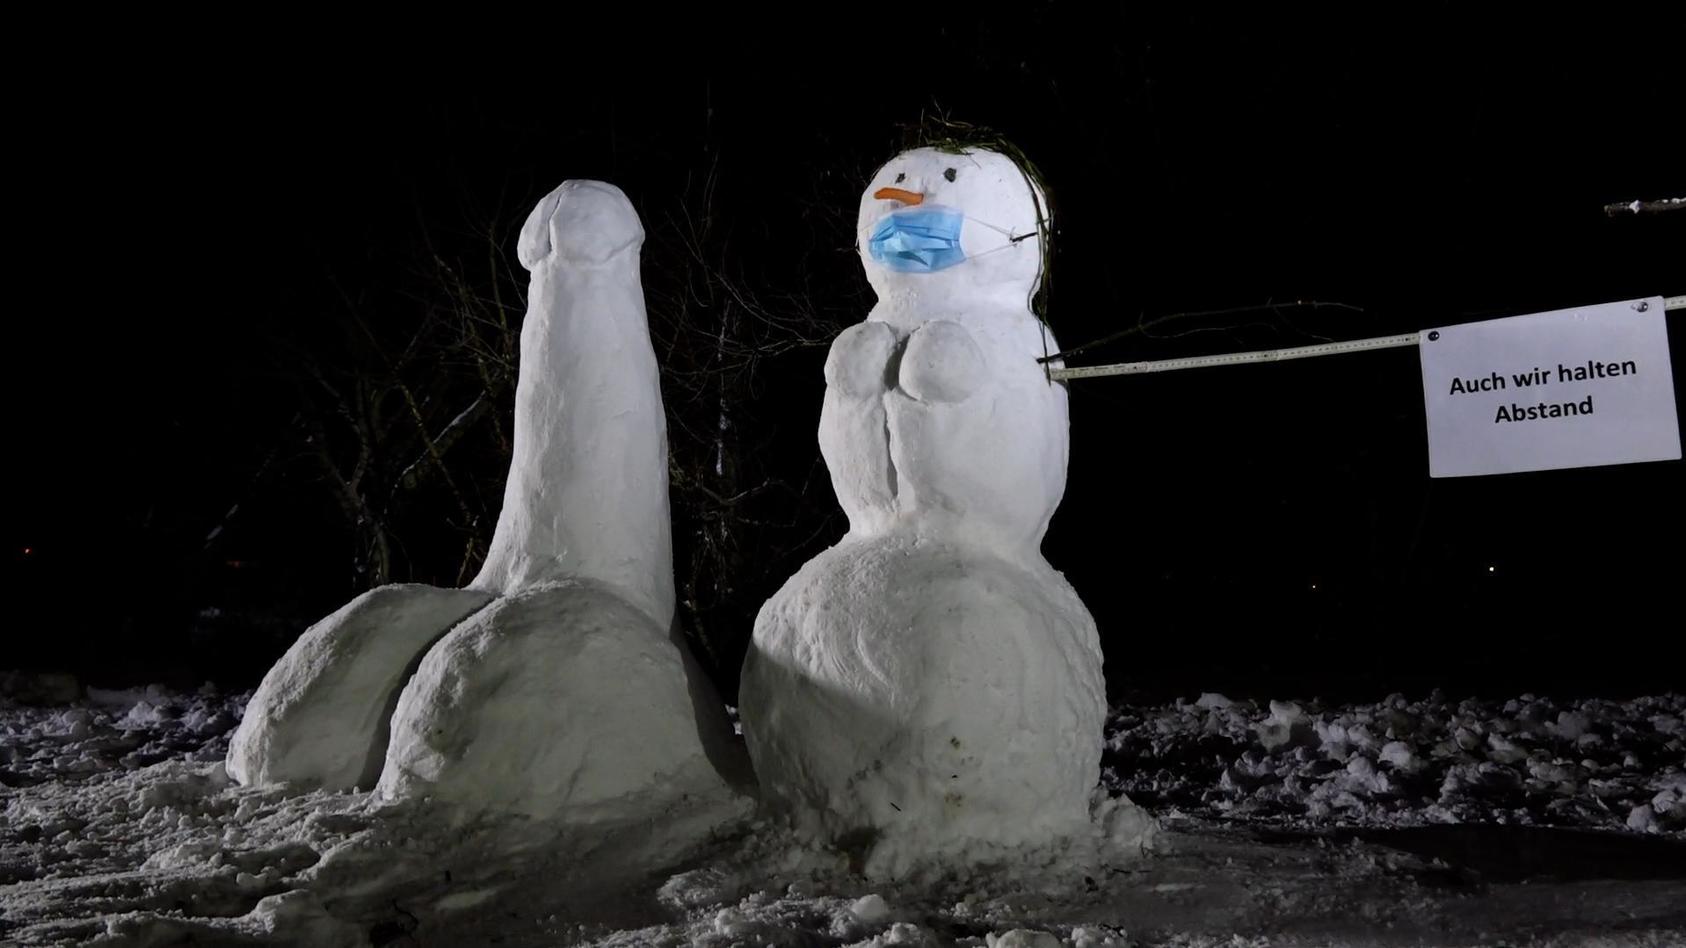 Erotische Schneeskulpturen einer selbsternannten Künstlergruppe